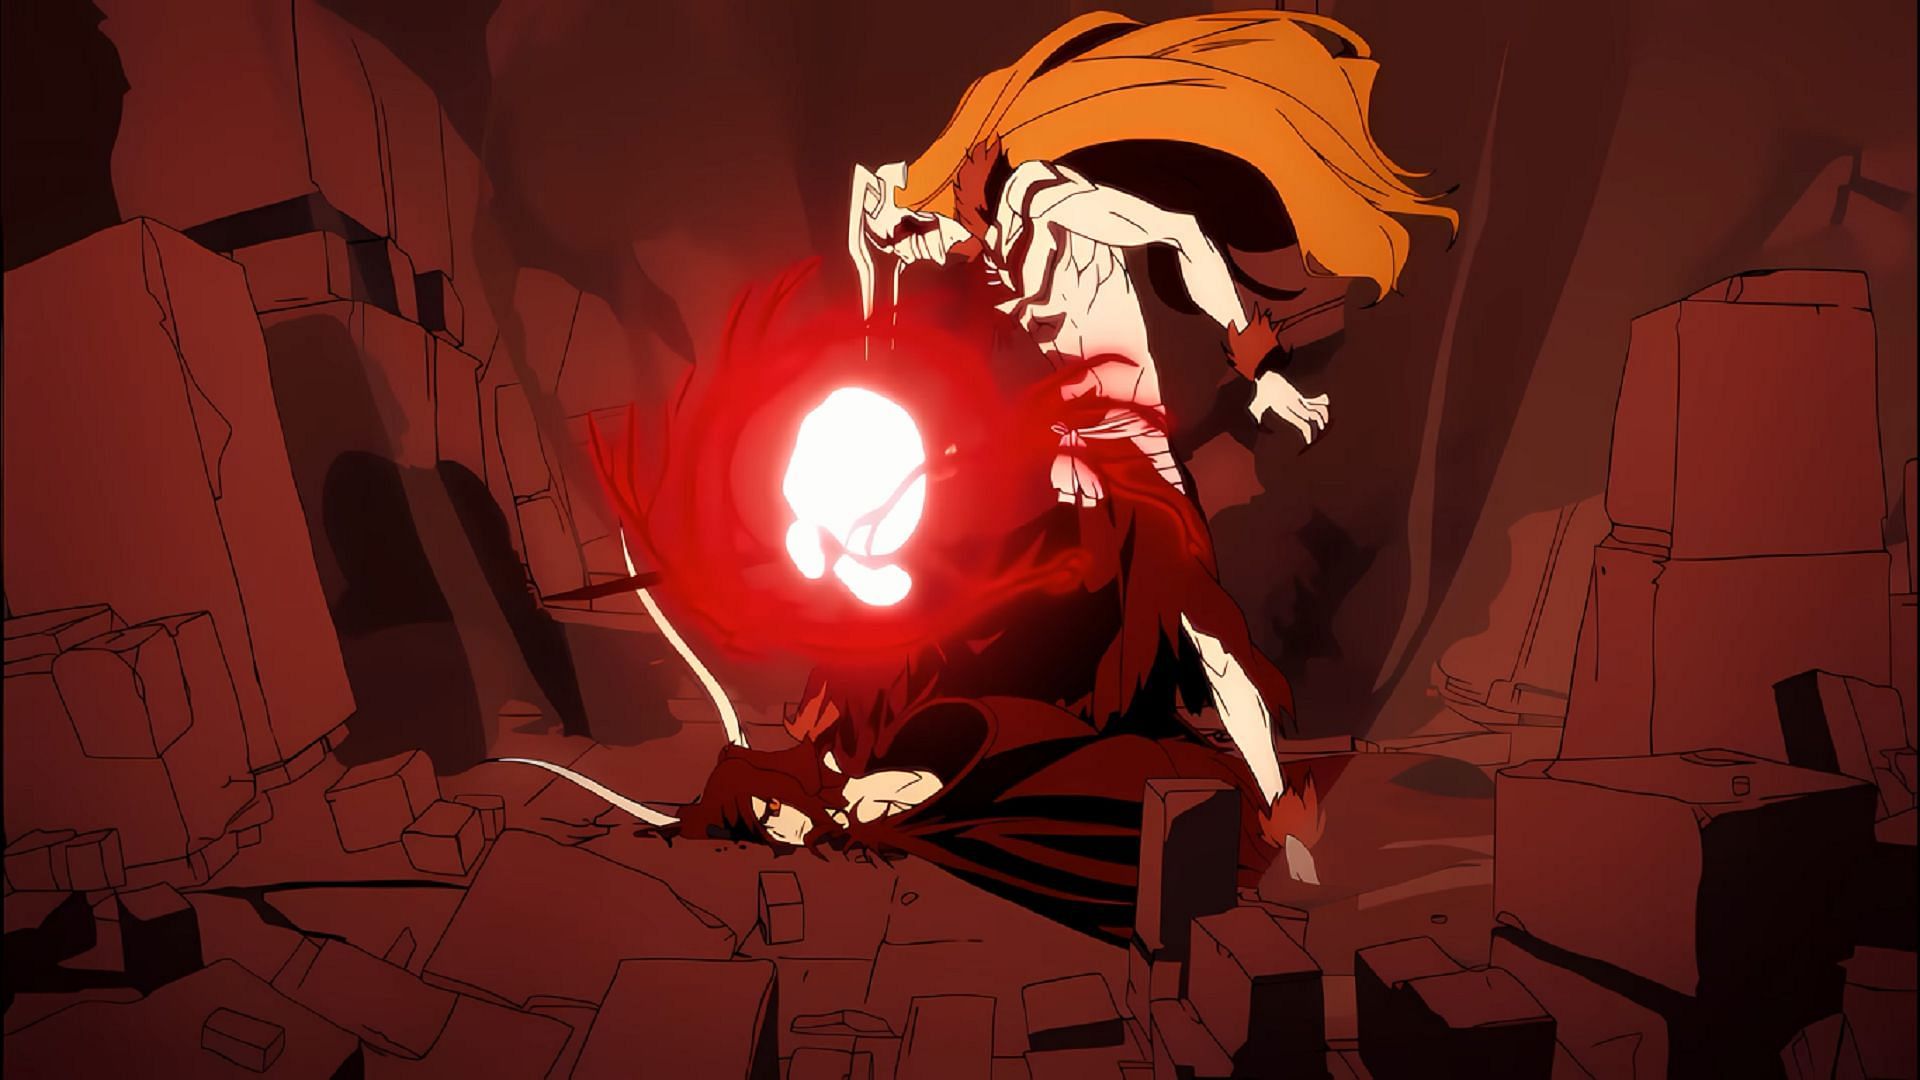 Ichigo vs Ulquiorra as seen in Hell Verse (Image via Studio Pierrot)